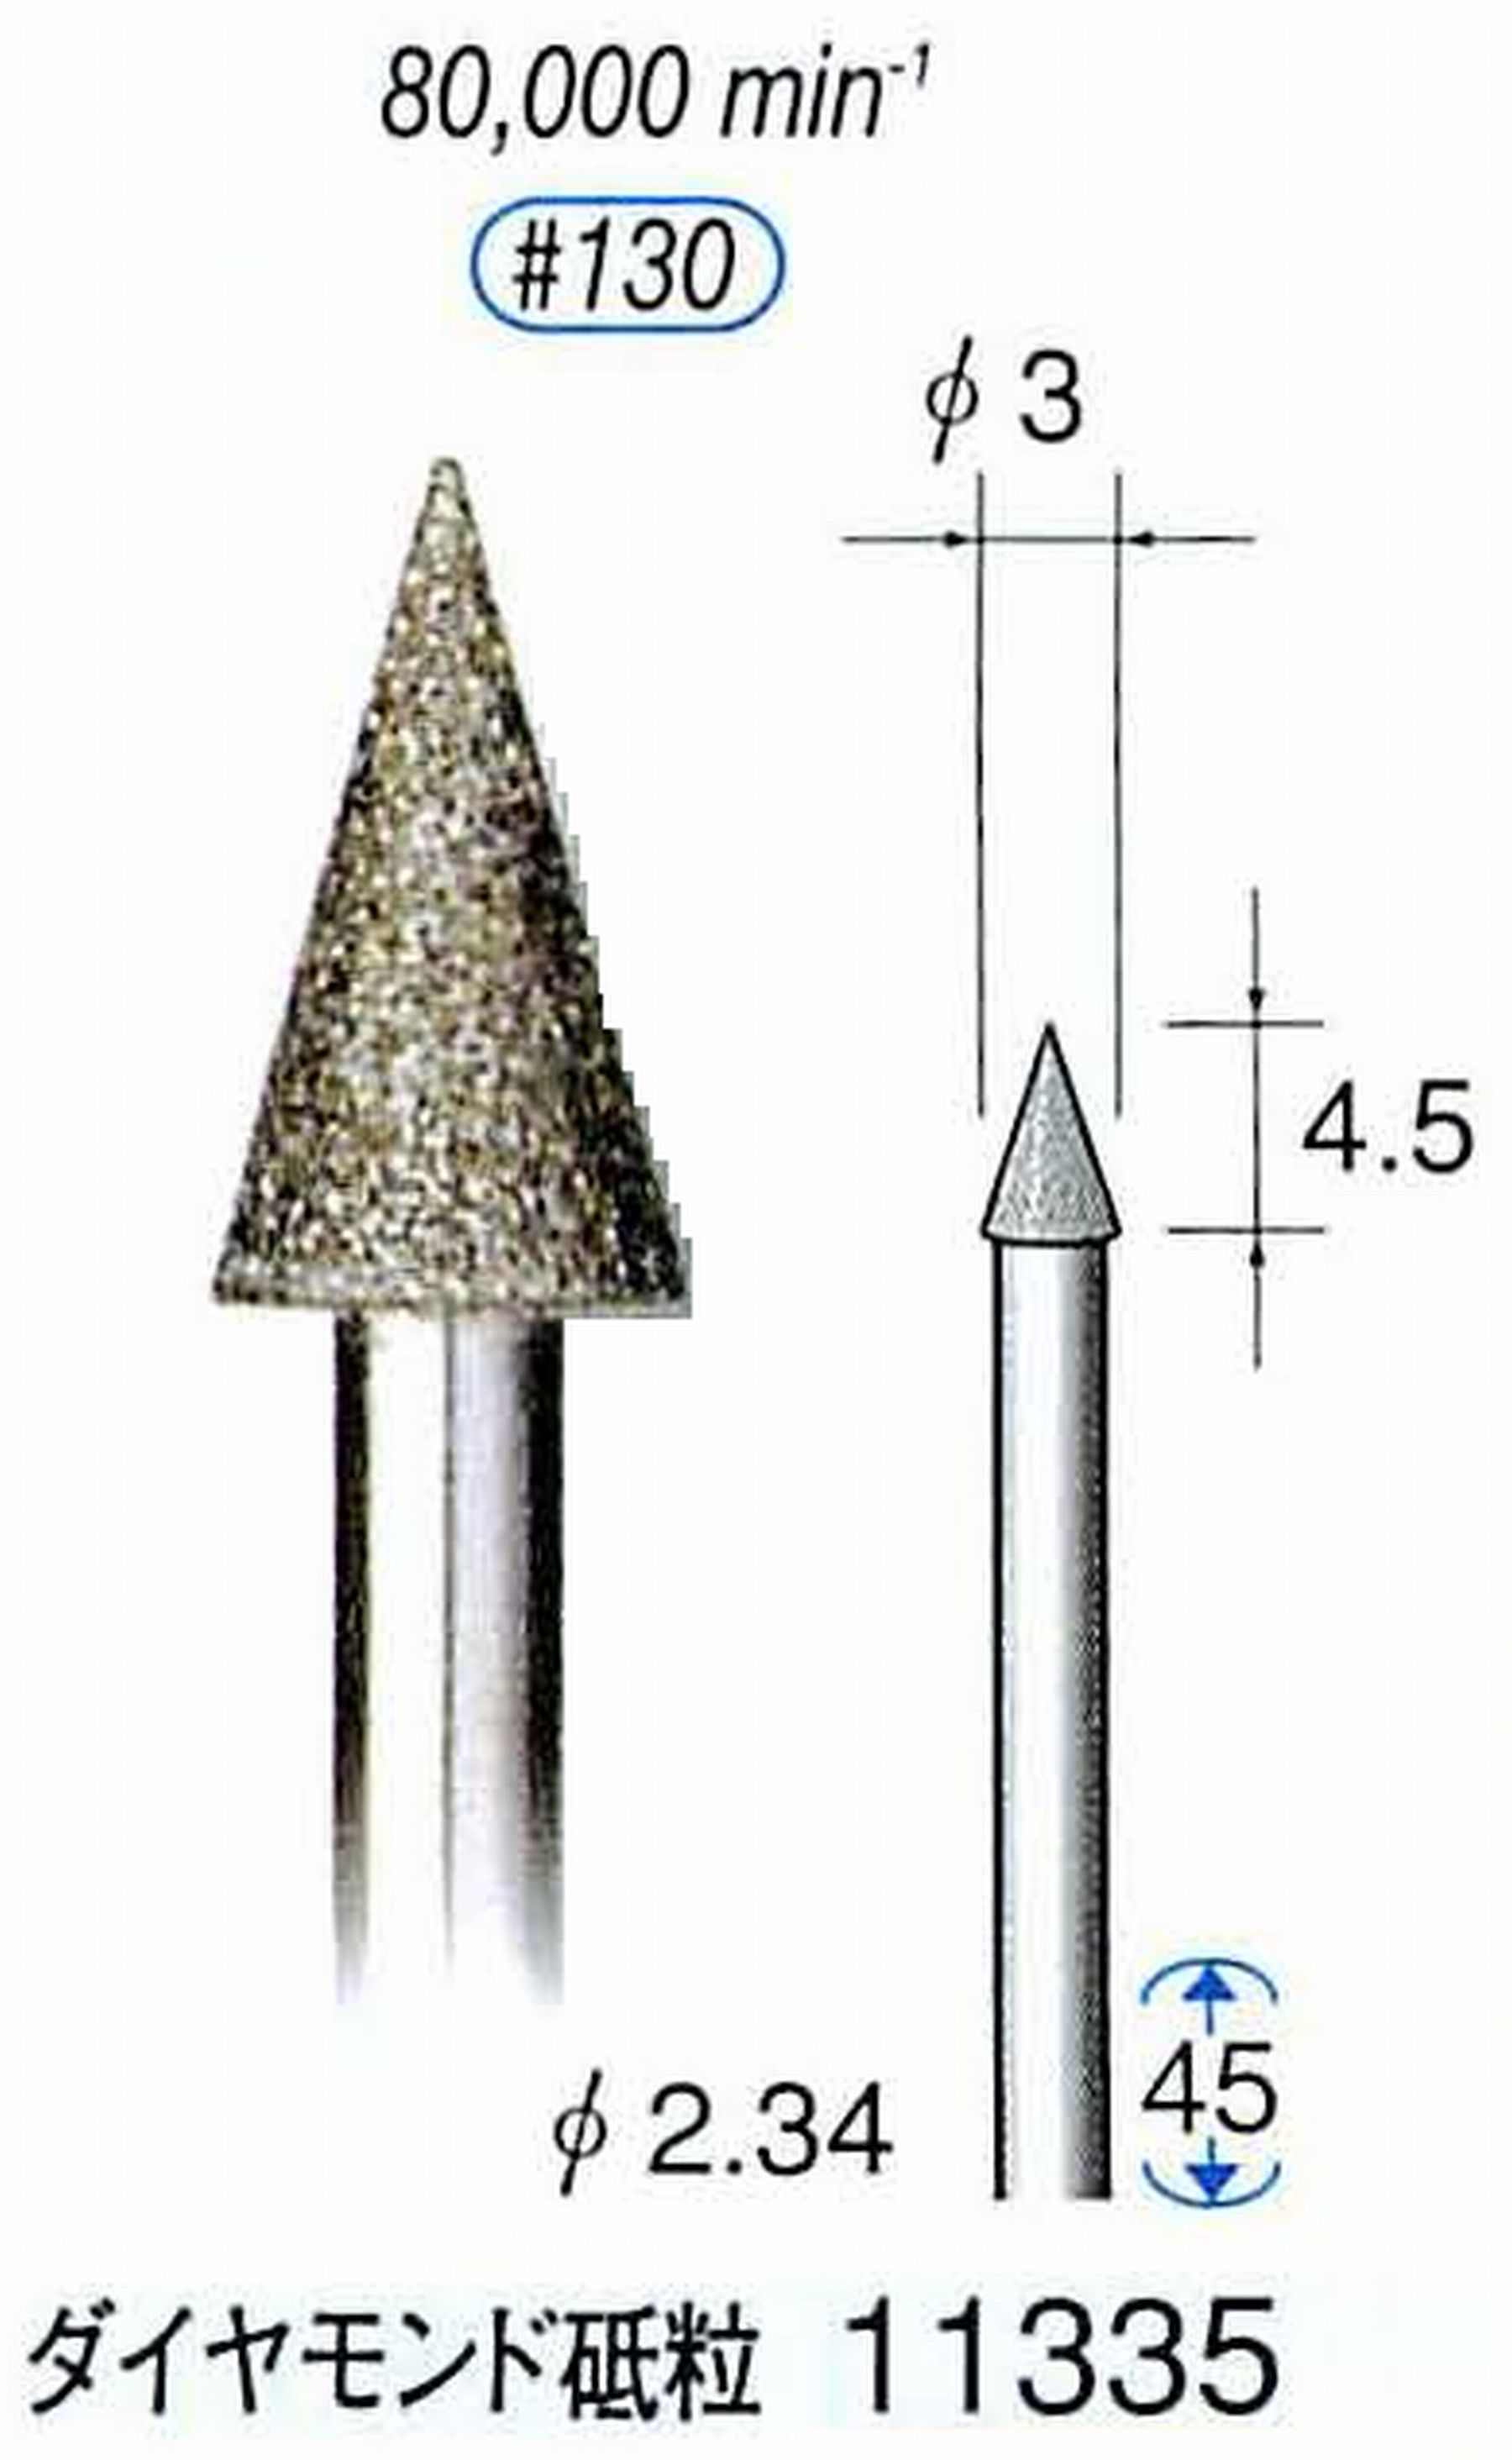 ナカニシ/NAKANISHI 電着ダイヤモンドバー ダイヤモンド砥粒 軸径(シャンク)φ2.34mm 11335